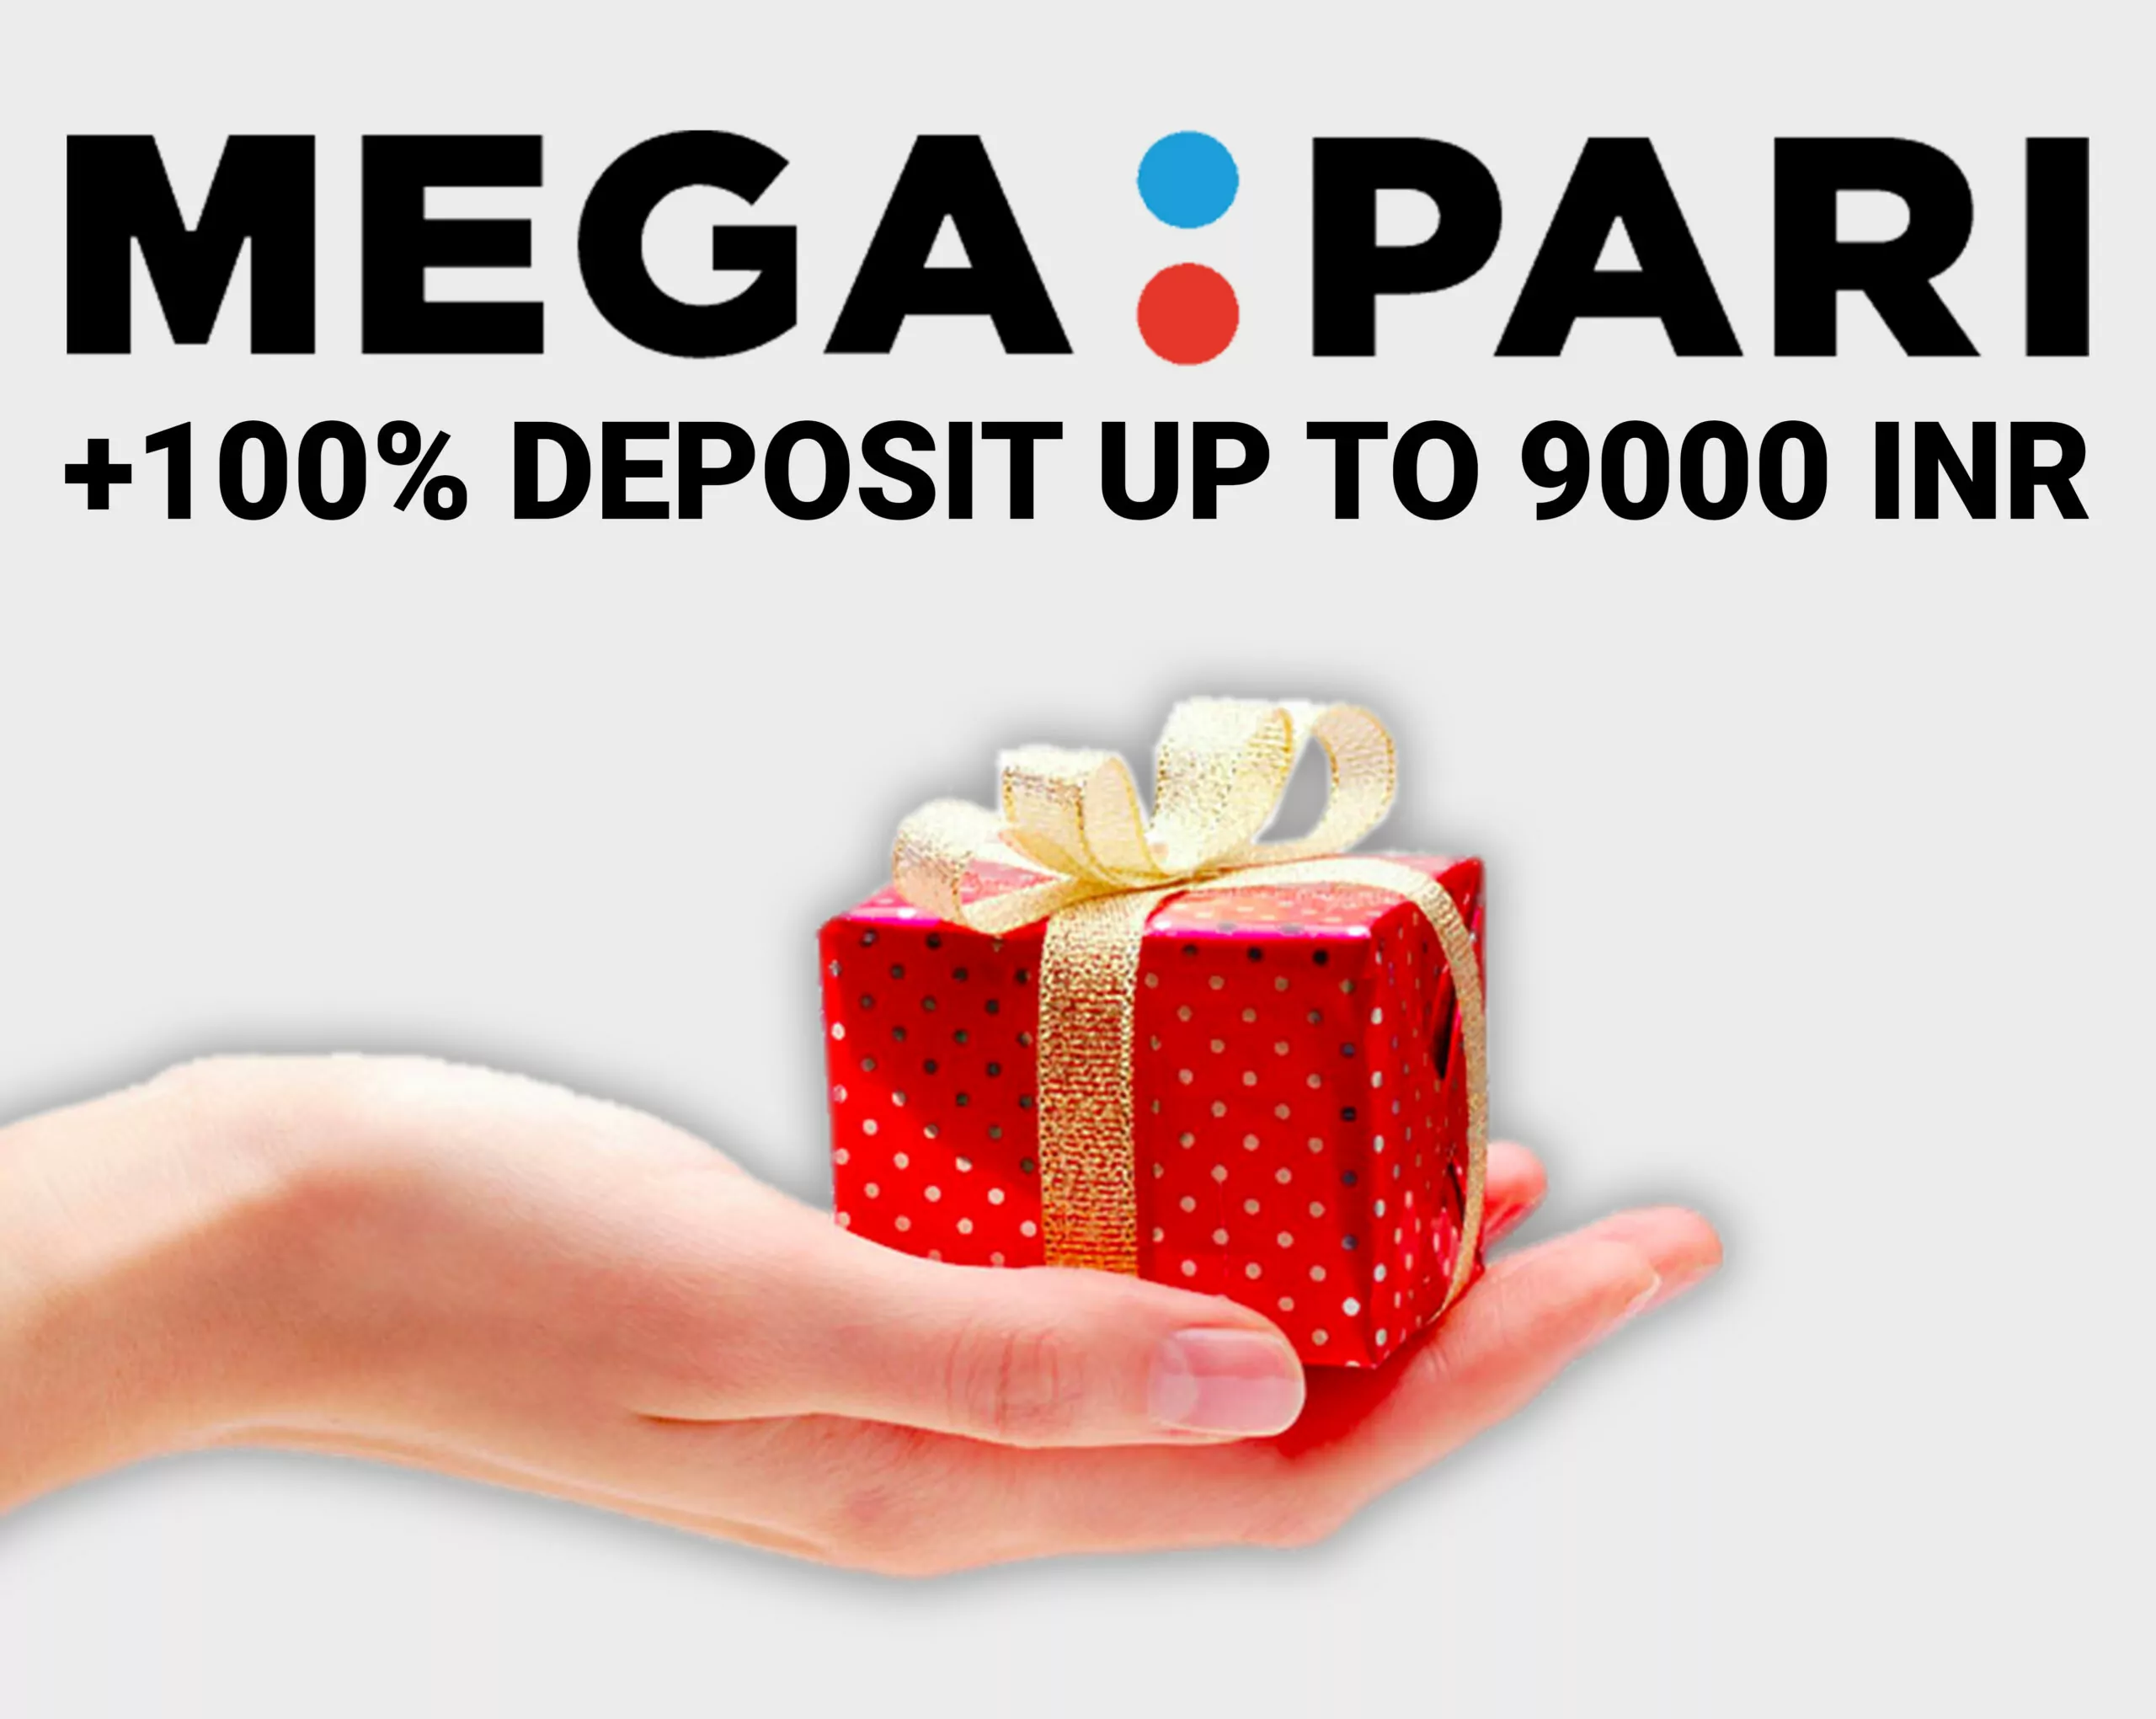 Get the Megapari first deposit bonus.